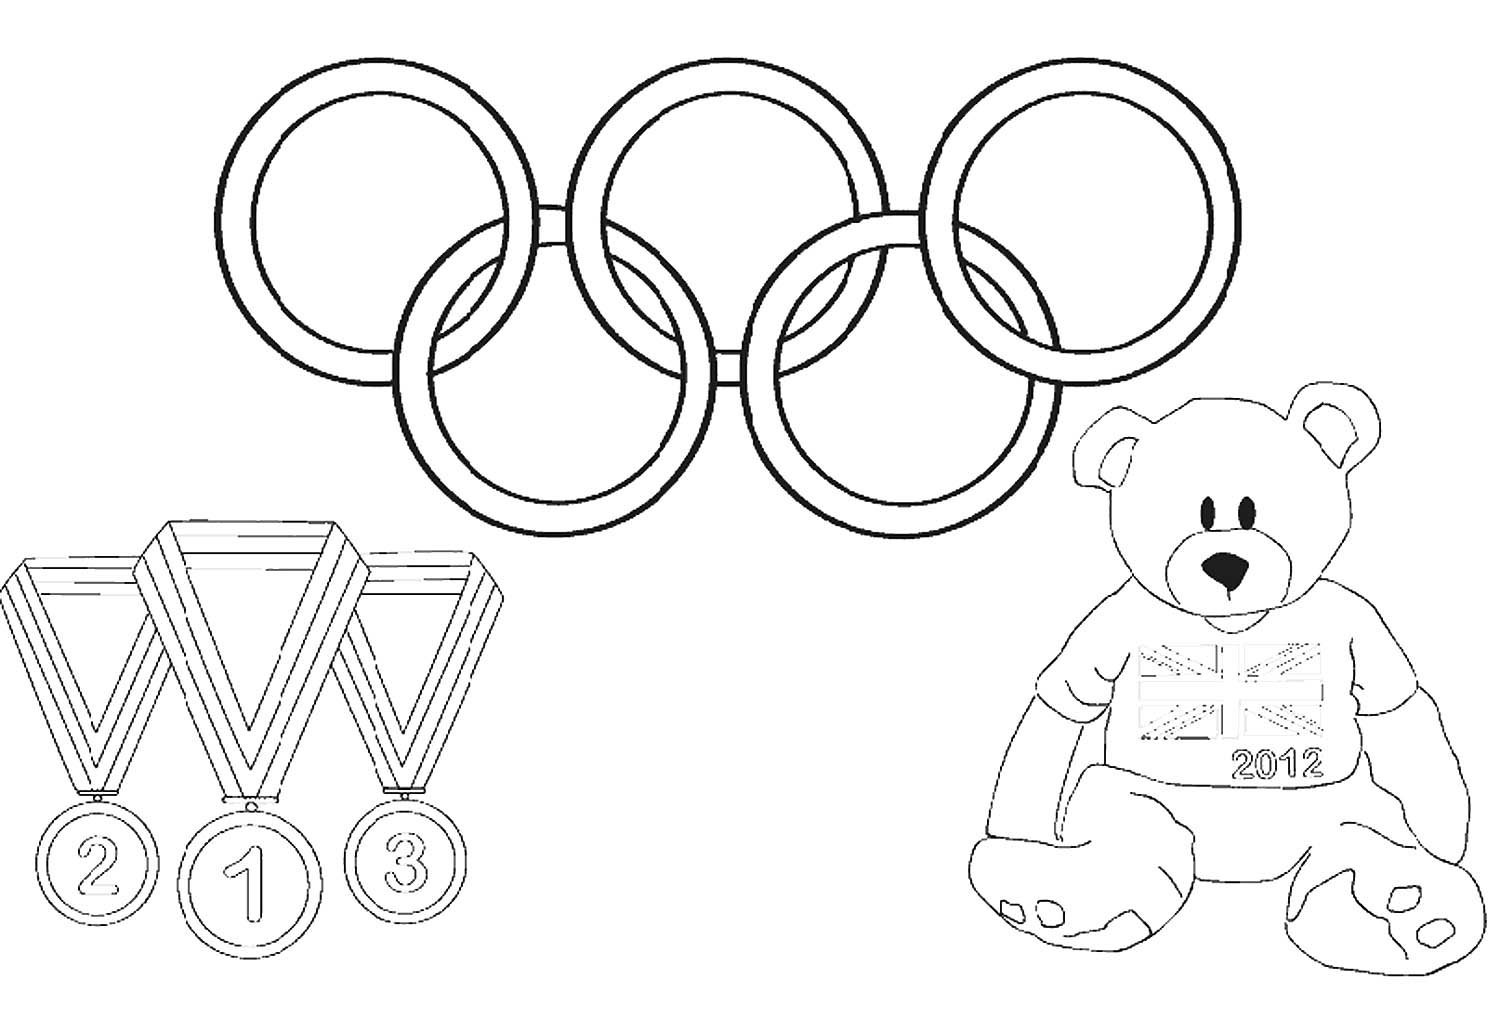 Олимпийские игры рисунок легко. Раскраска на тему Олимпийские игры. Олимпийские игры рисунок. Раскраска Олимпийские игры для детей. Олимпийские кольца раскраска.